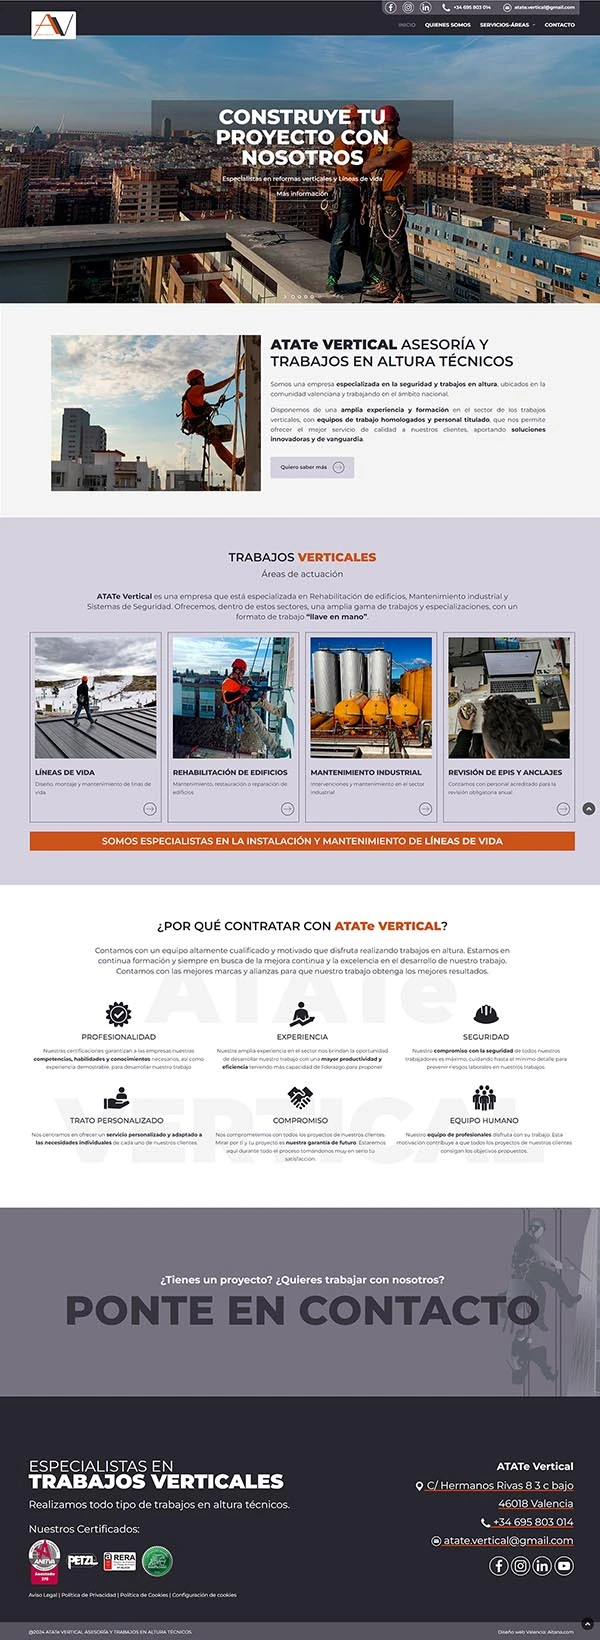 Diseño Página web Trabajos verticales y en altura - Diseño página web Atate Vertical